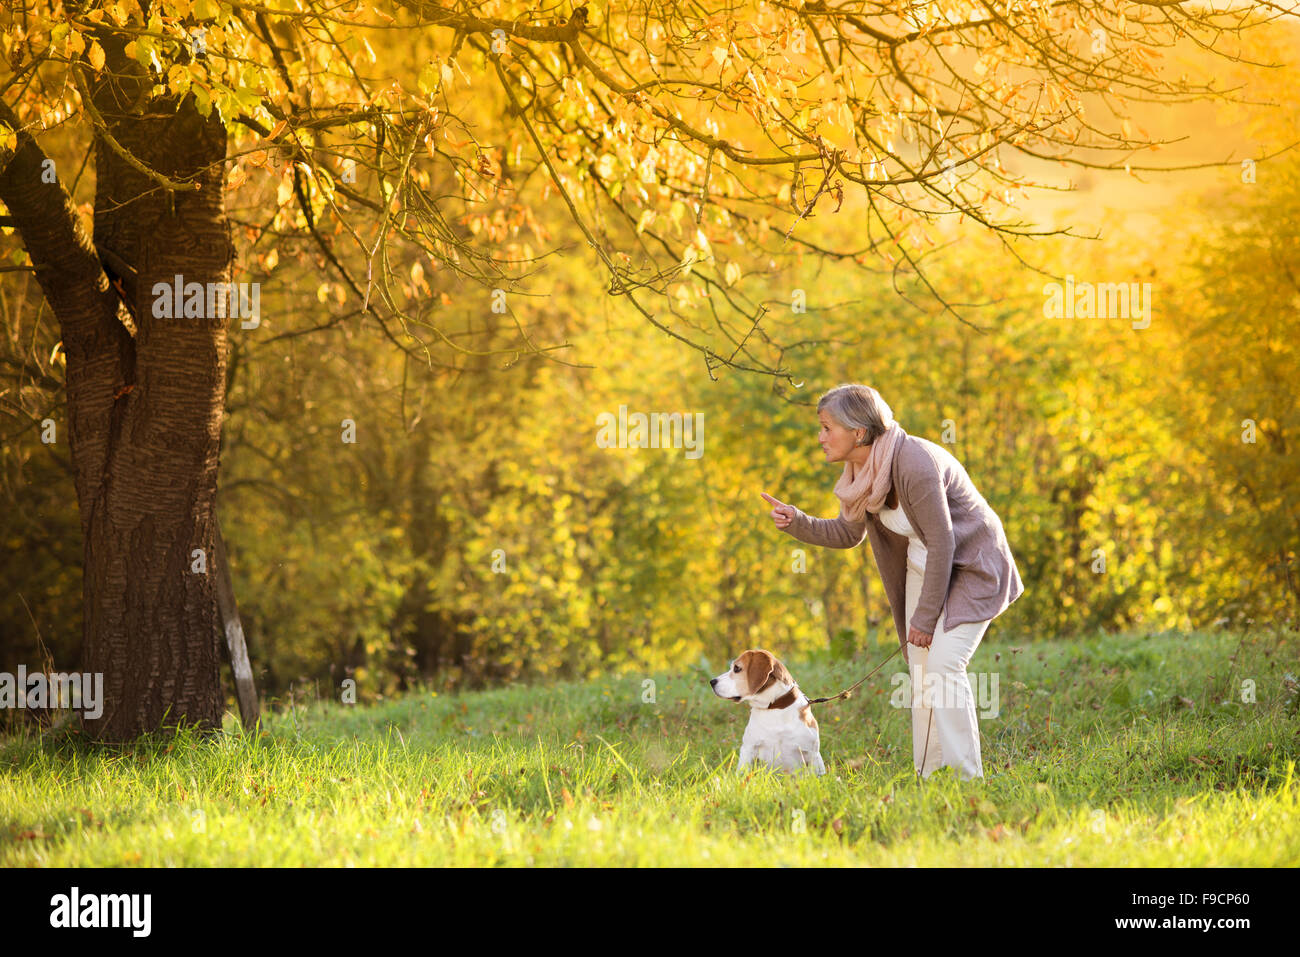 Senior woman promener son chien beagle en campagne Banque D'Images